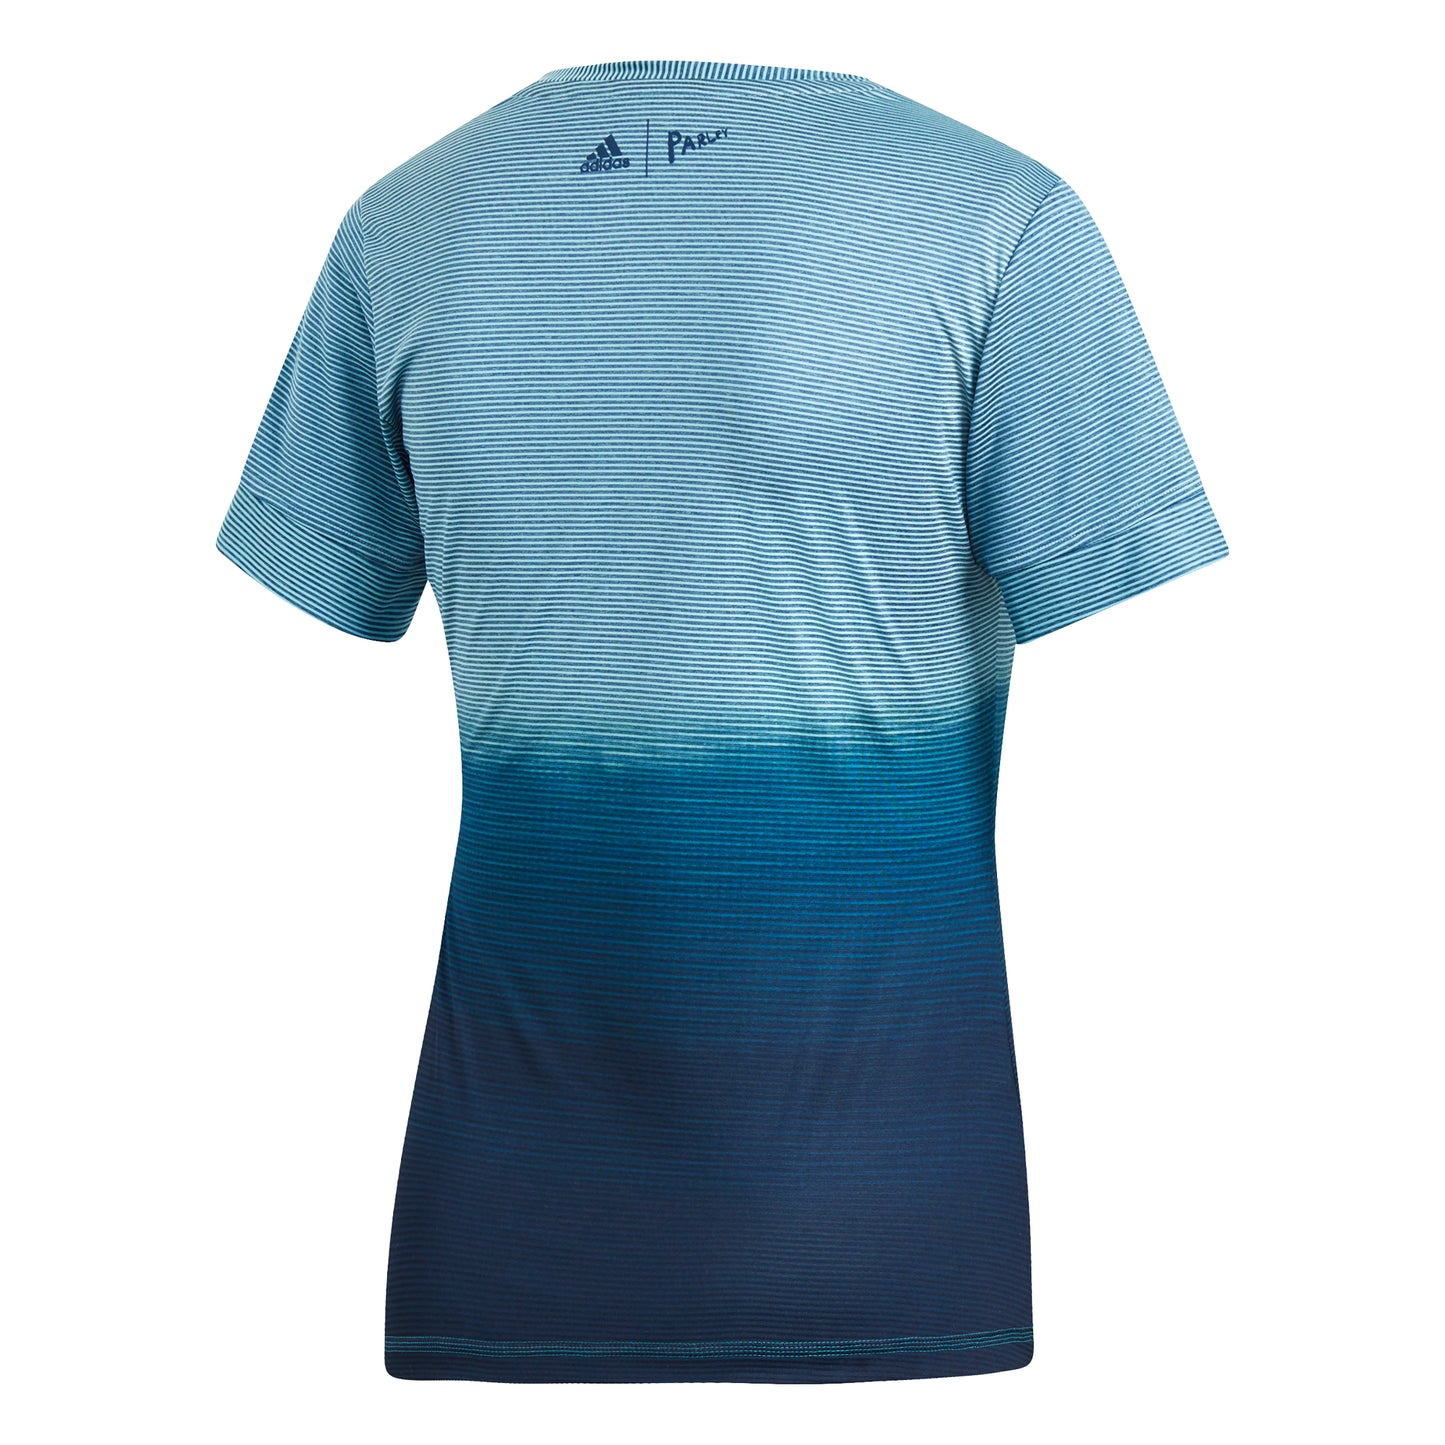 adidas Women's T-shirt - Parley Blue DT3964 - VuTennis